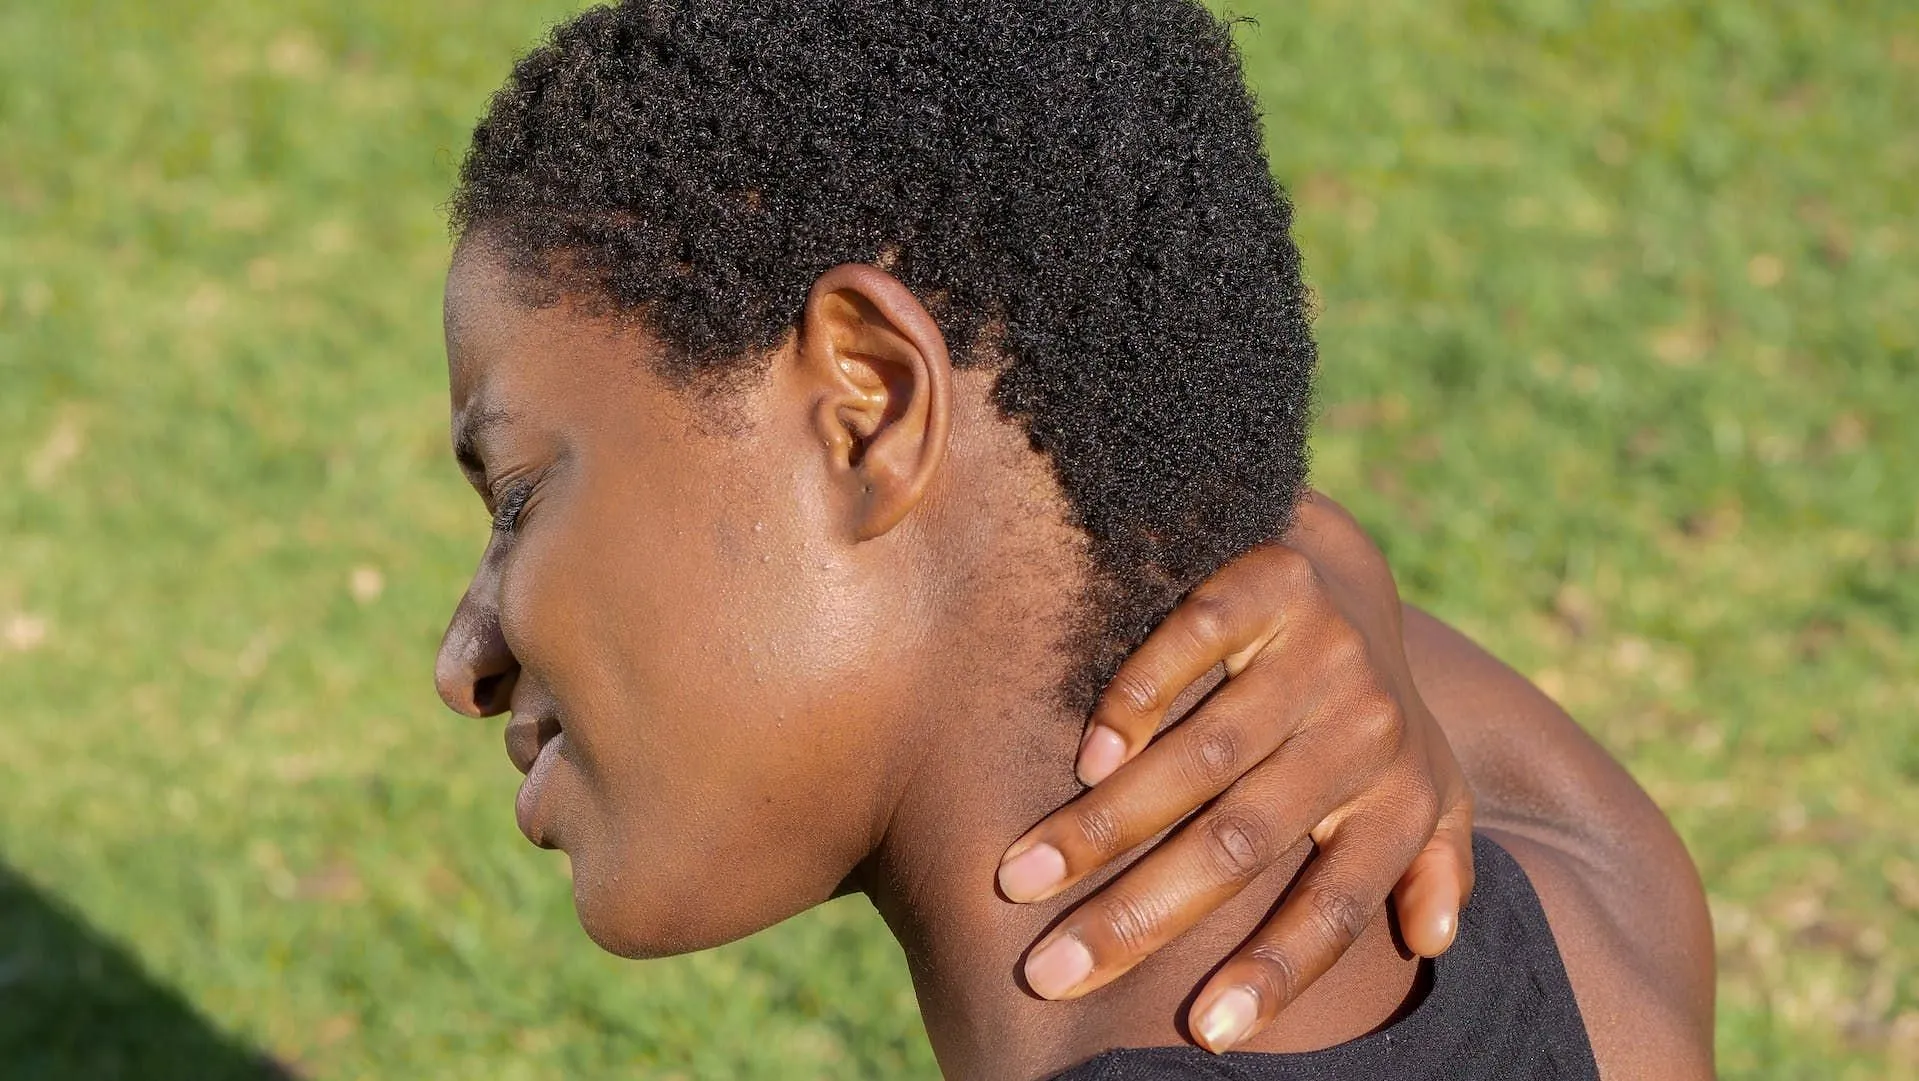 Les douleurs au cou peuvent avoir plusieurs raisons. (Image via Pexels/Kindel Media)